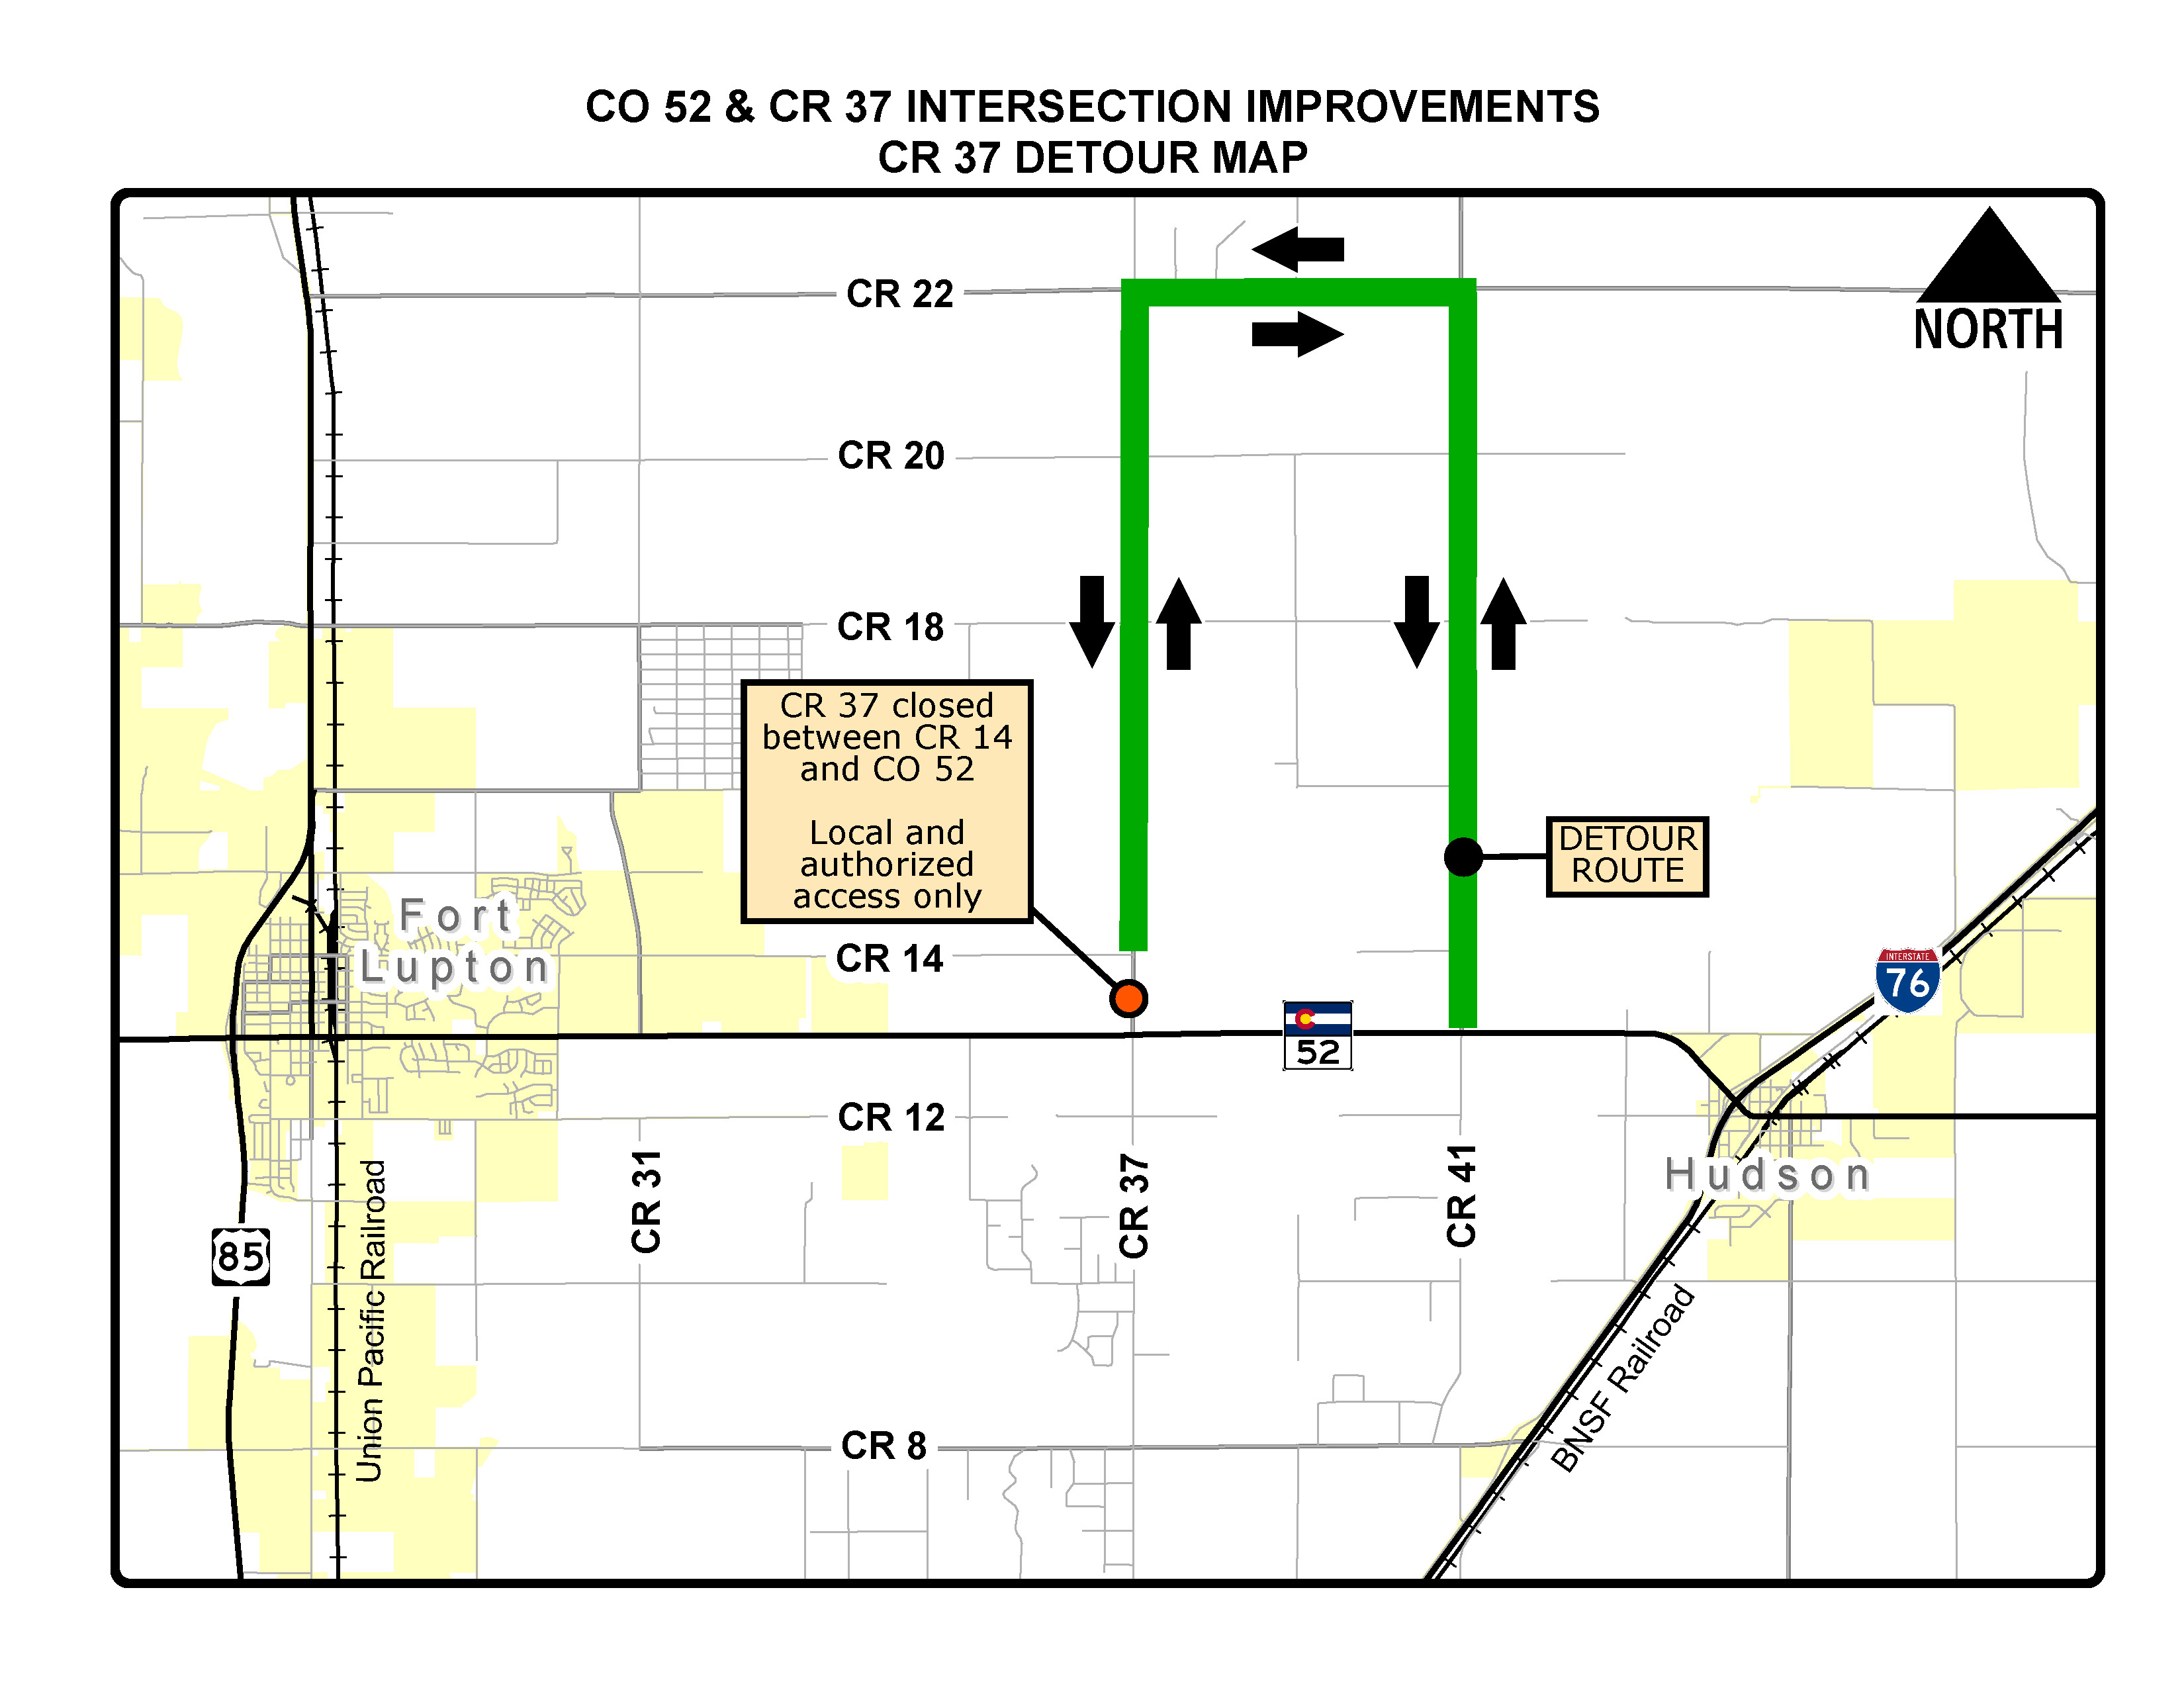 CO 52 & CR 37 Intersection Improvements detour map detail image